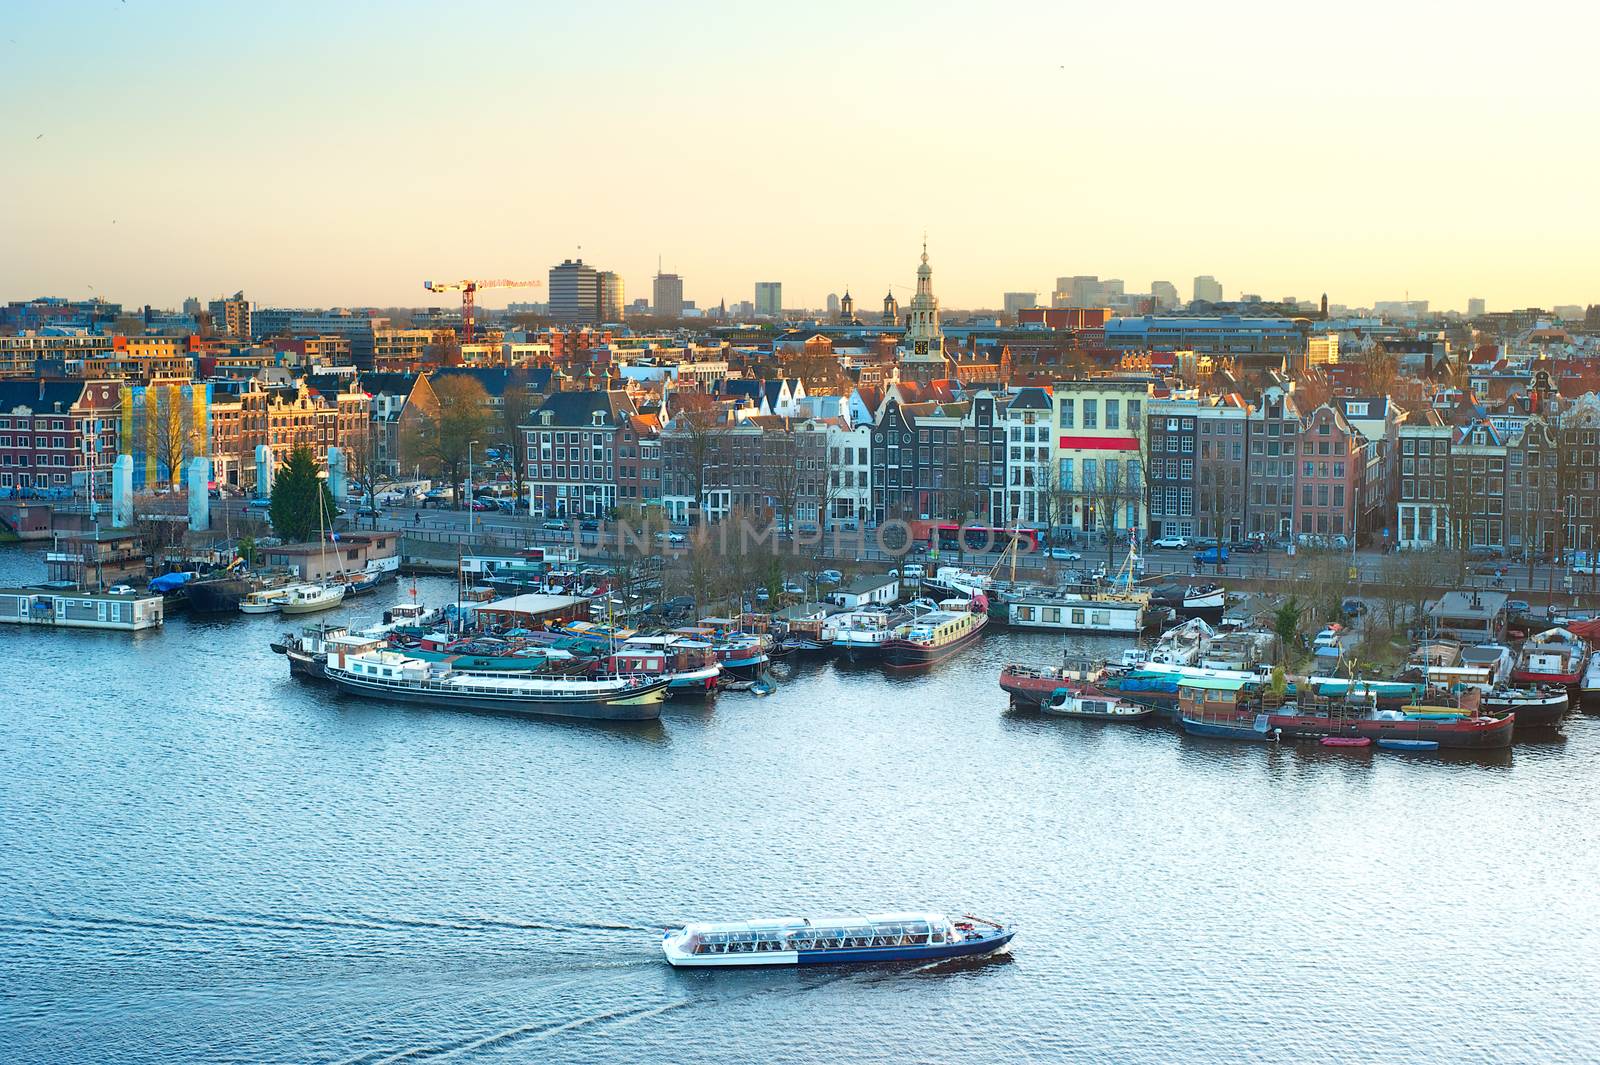 Skyline of Amsterdam by joyfull